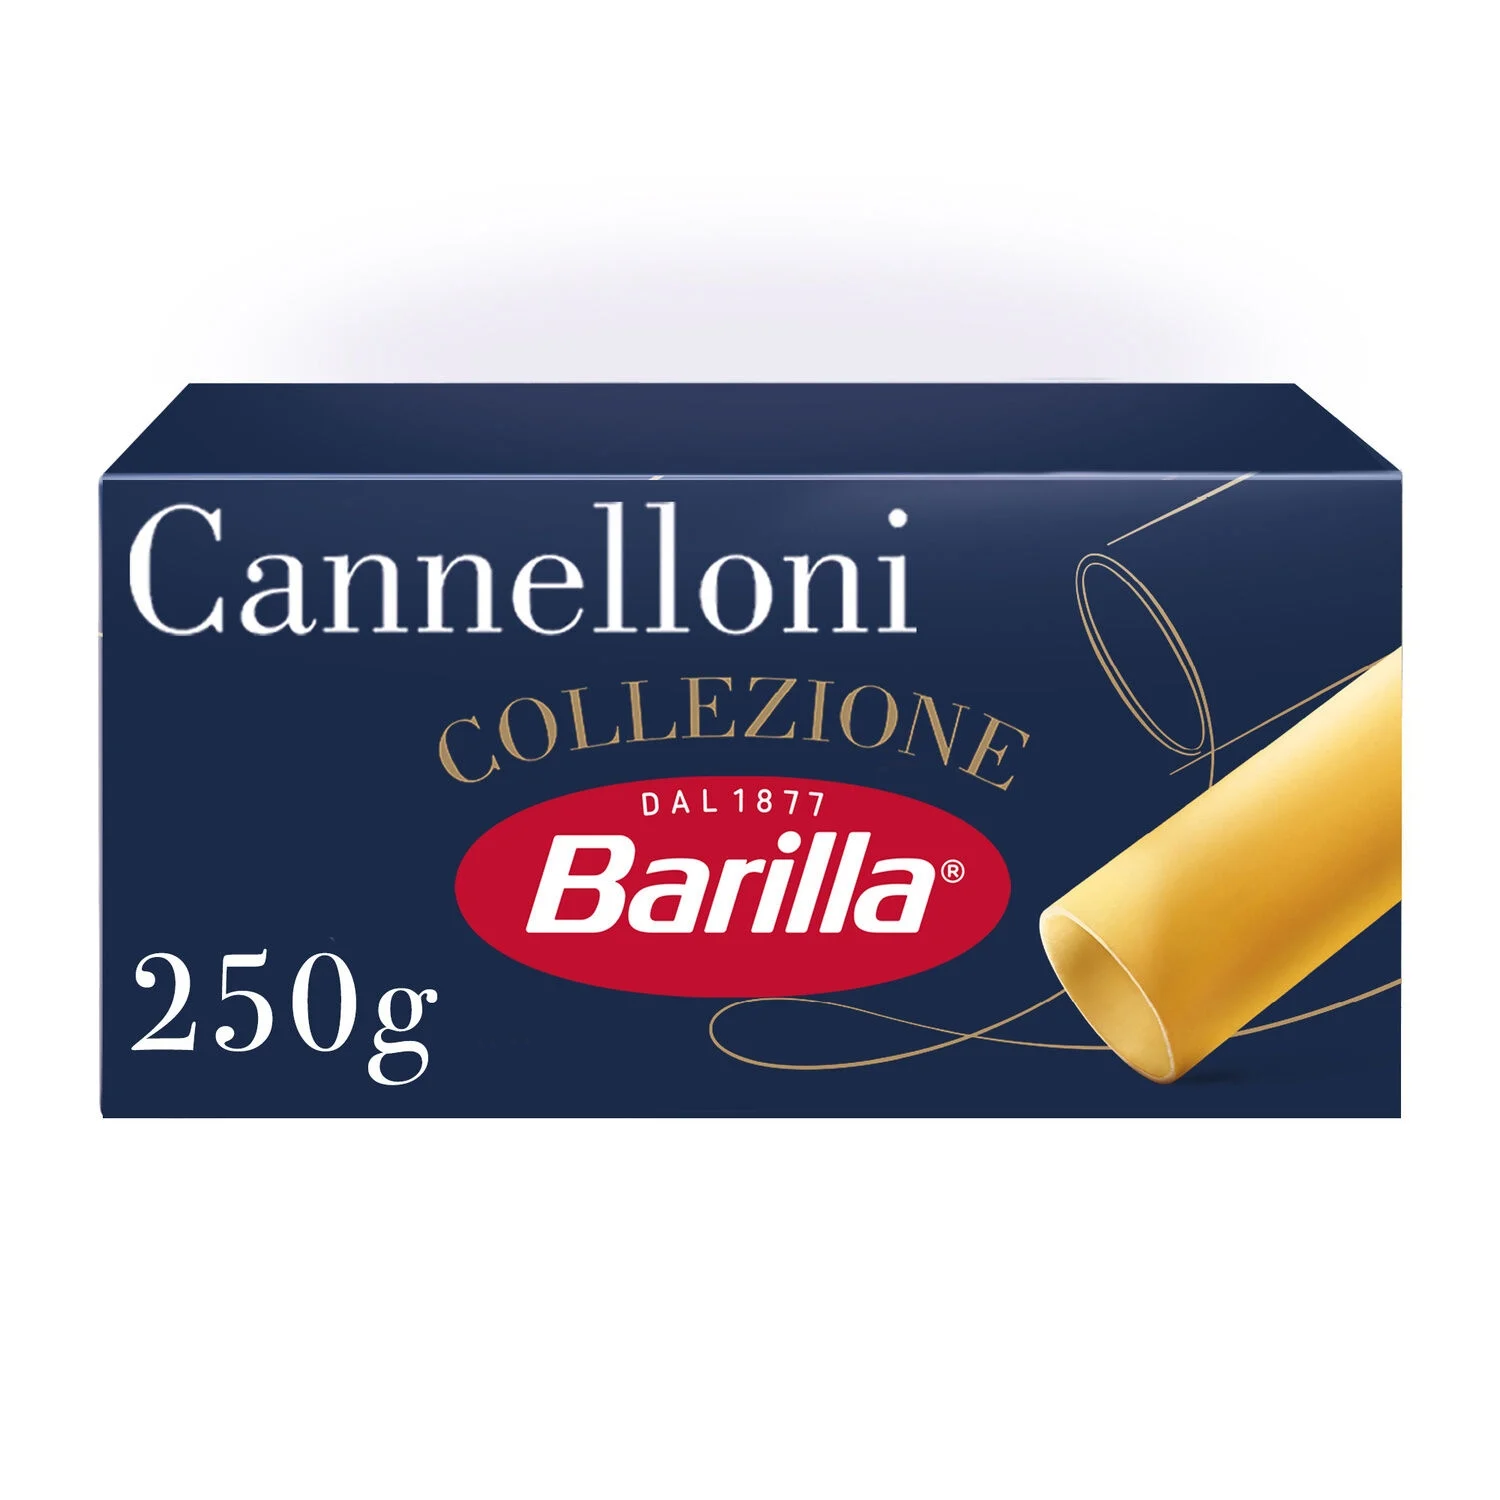 250g Cannelloni Barilla